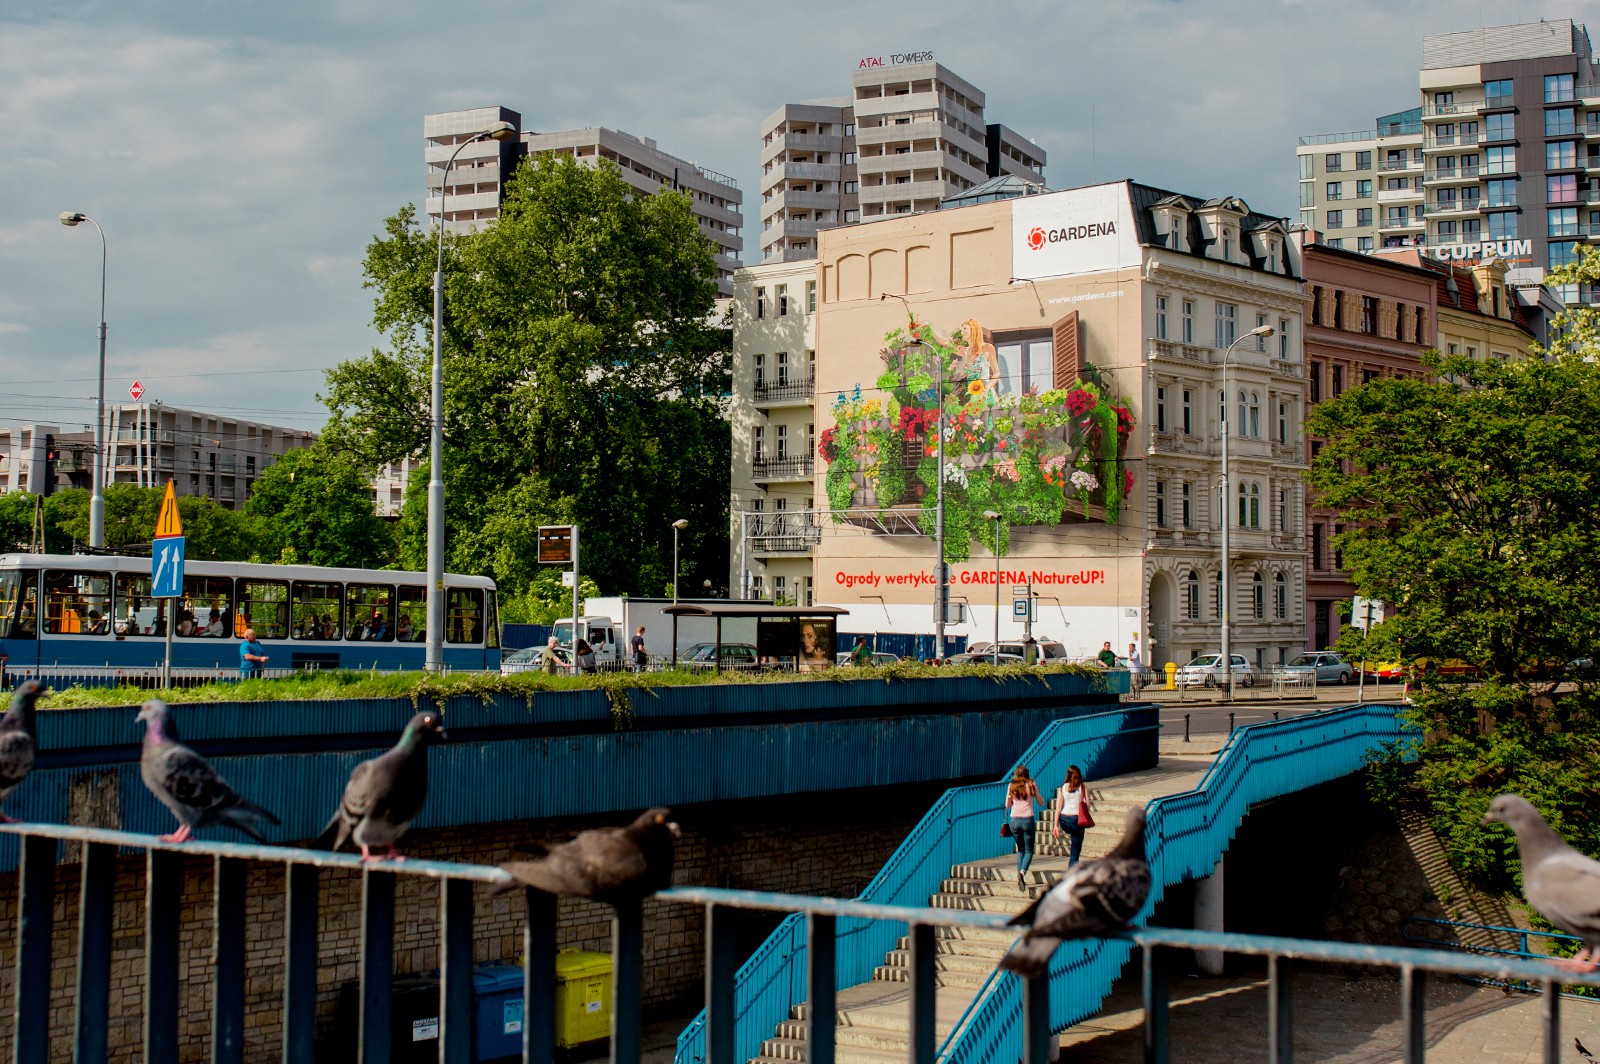 Mural rekalmowy 3D we Wrocławiu na zamówienie Gardena | Gardena | Portfolio